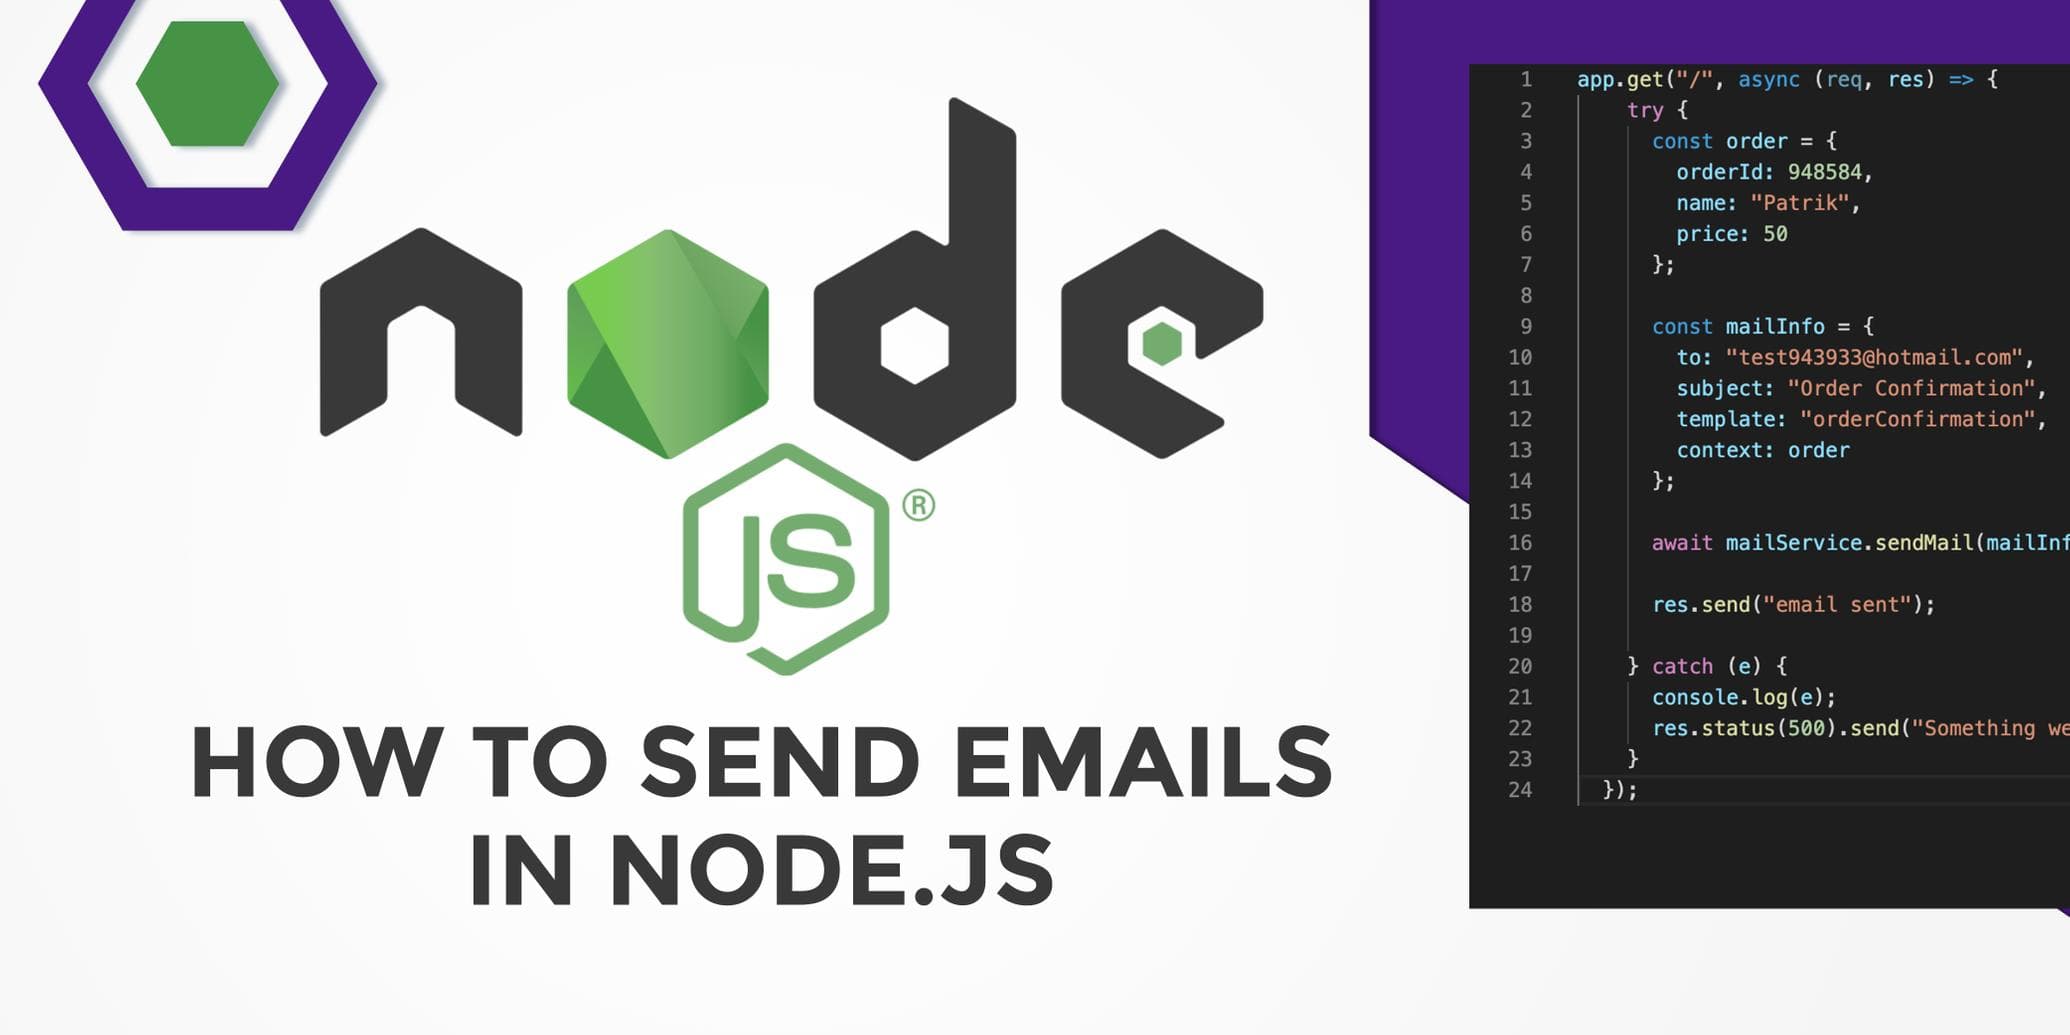 Sending emails in Node.js